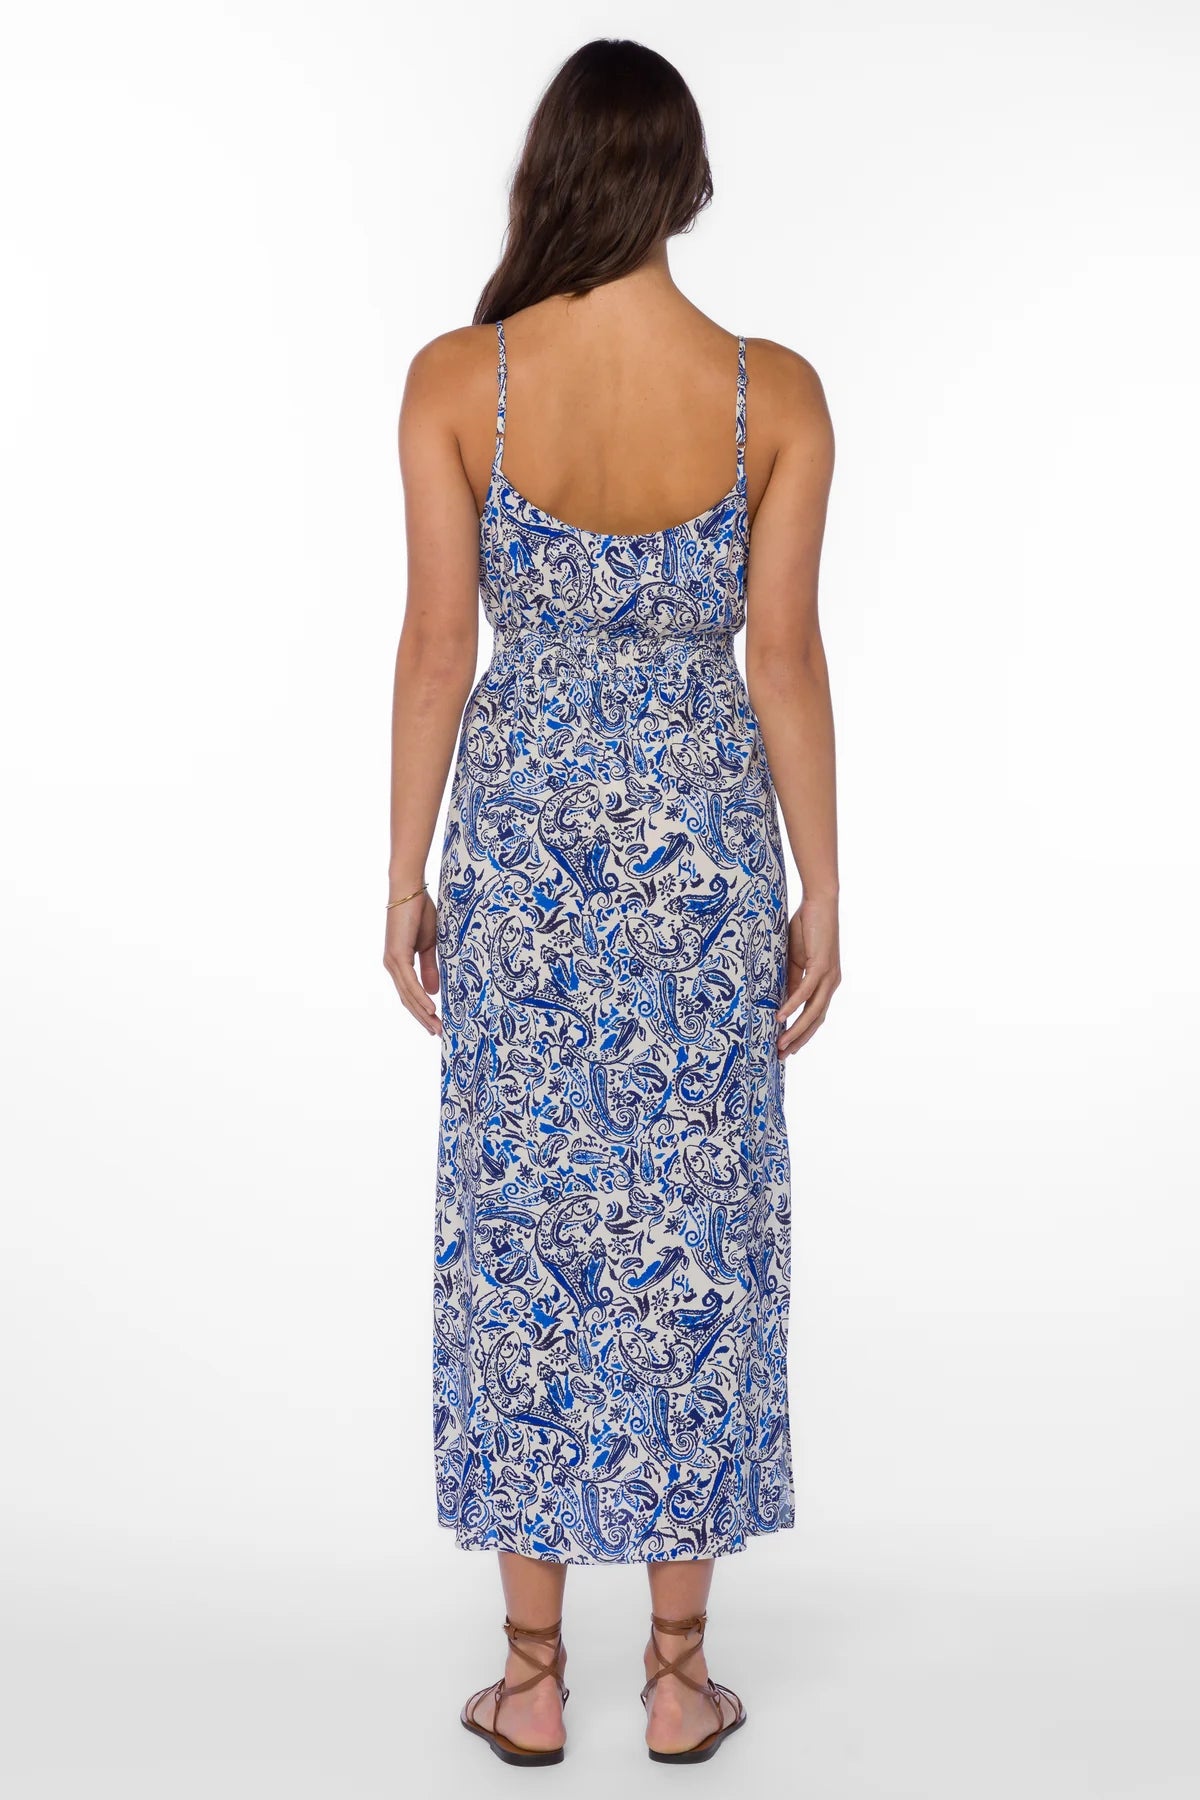 Blue Paisley Print Midi Dress Apex Ethical Boutique